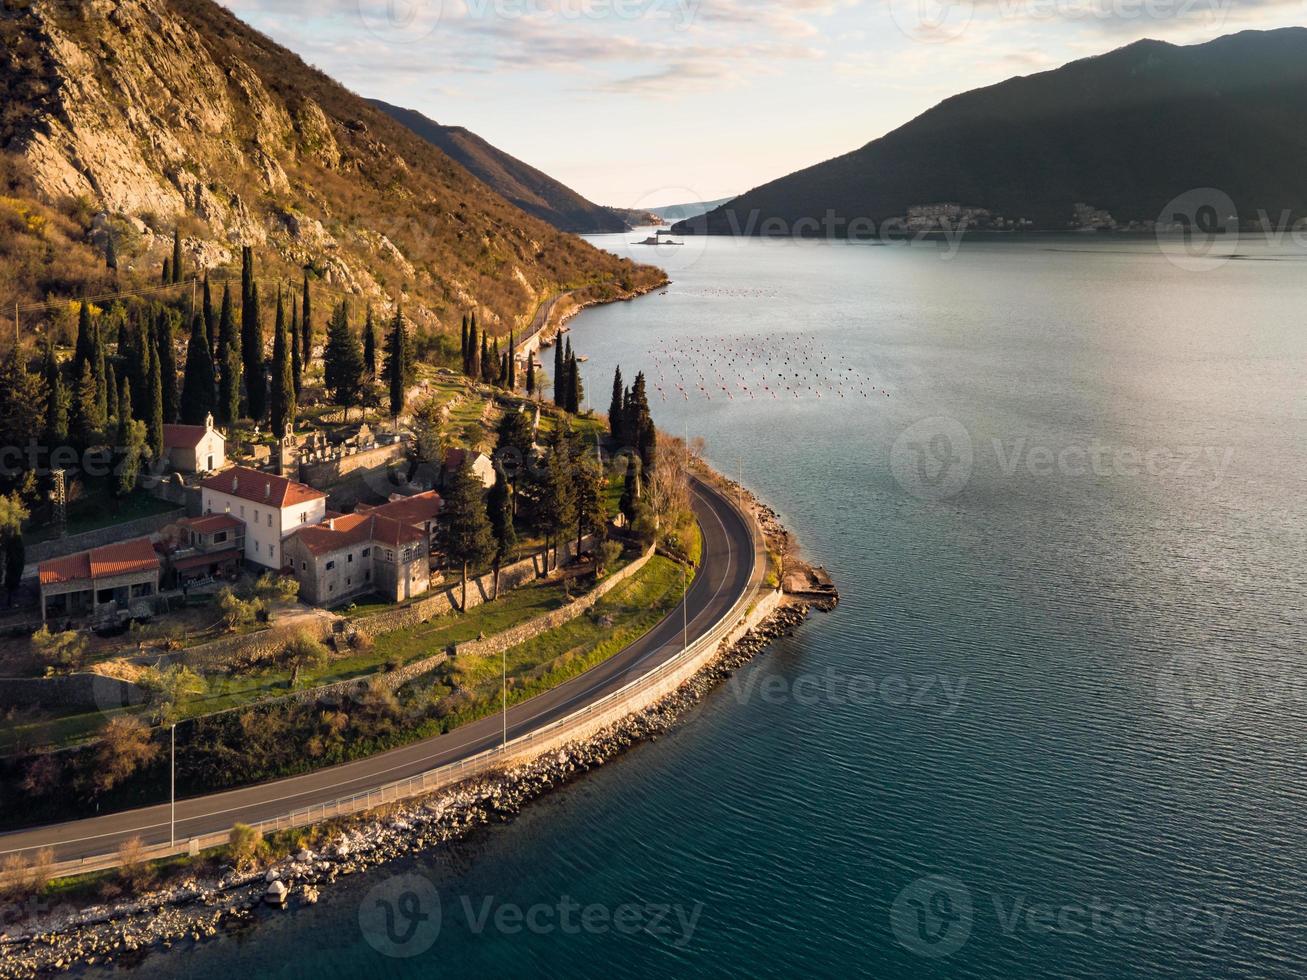 kloster av banja vid stranden av Kotor Bay, Adriatiska havet, mellan städerna Risan och Perast, i Montenegro. foto